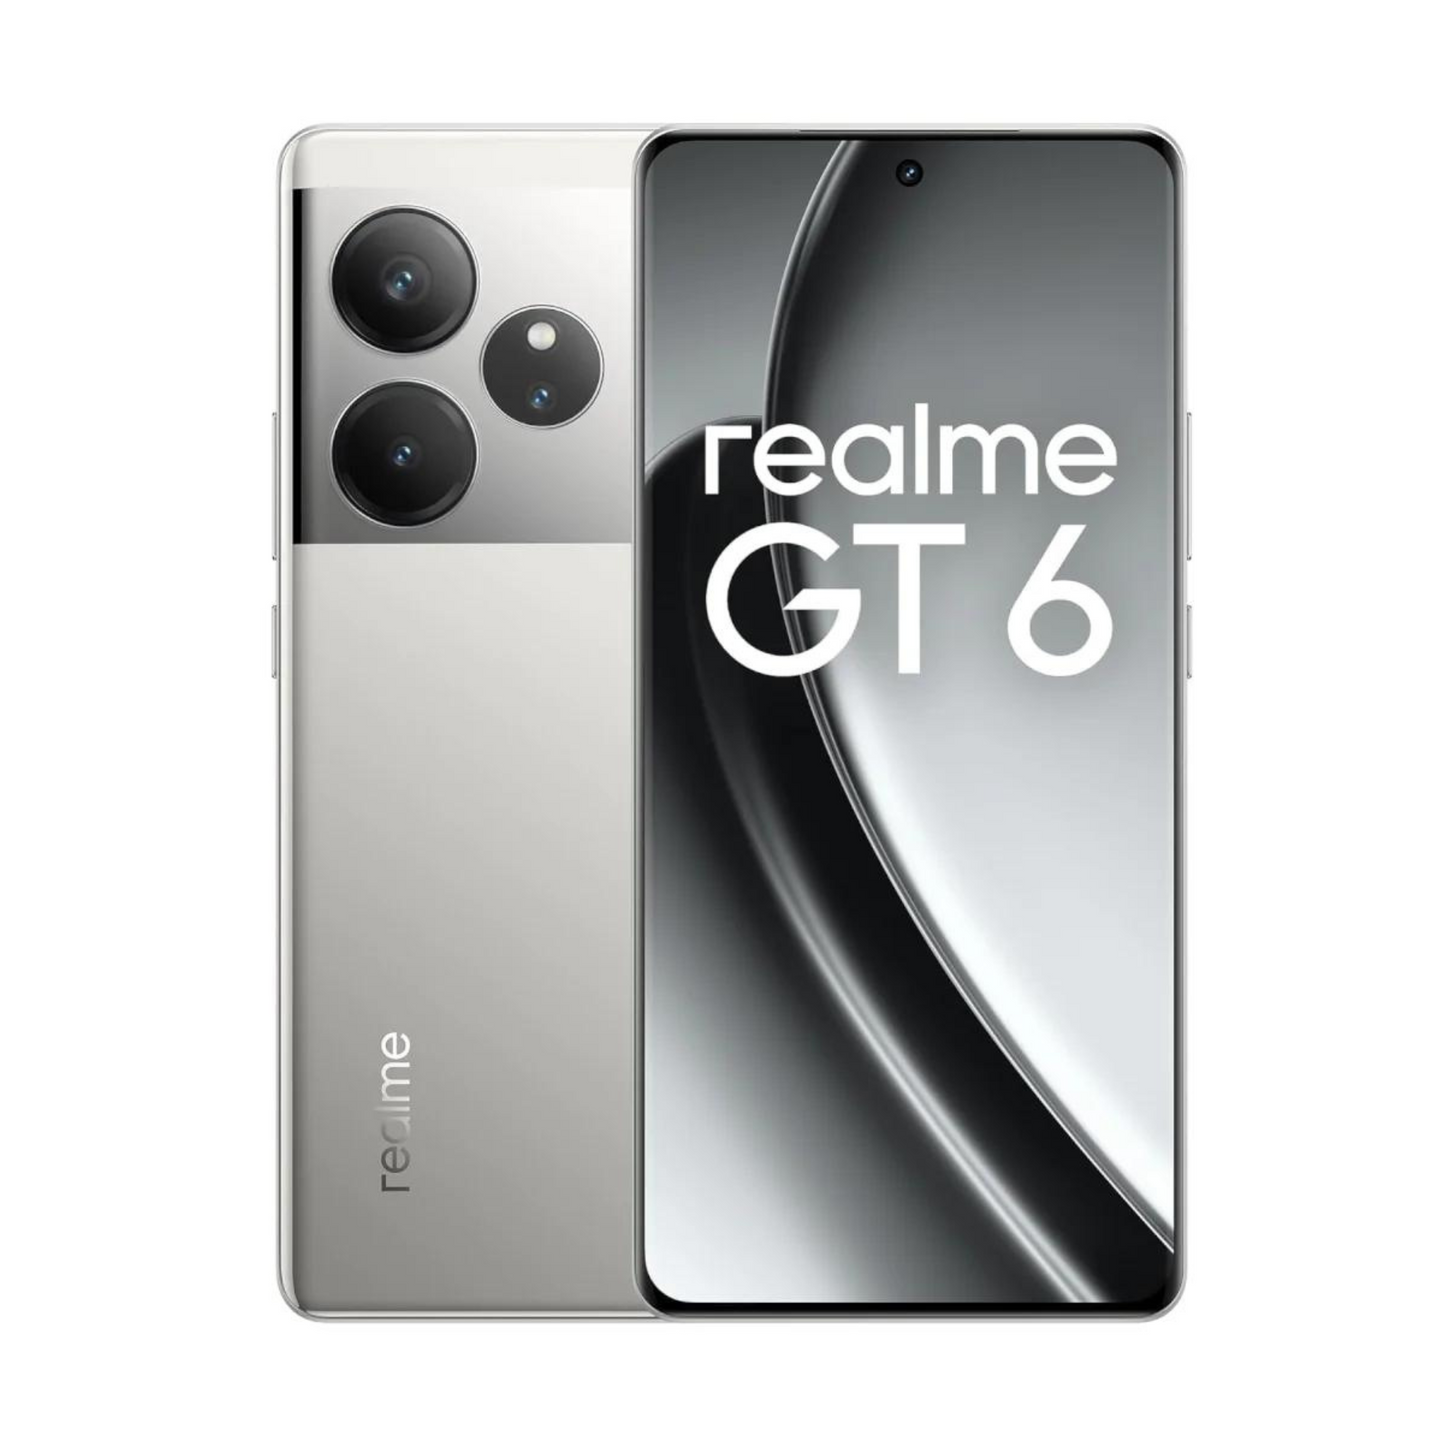 Realme GT6